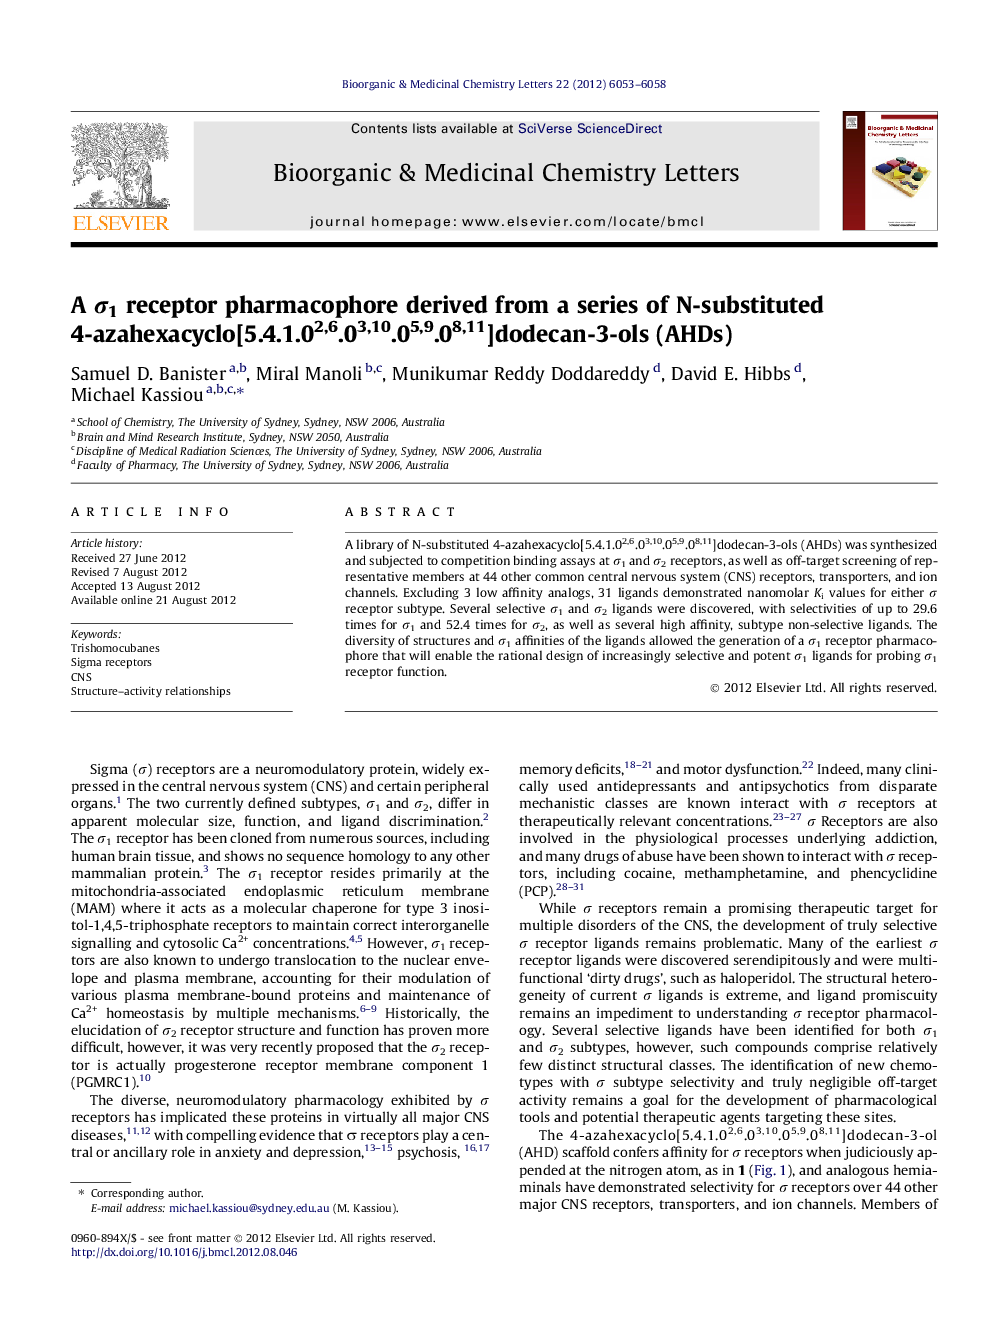 A Ï1 receptor pharmacophore derived from a series of N-substituted 4-azahexacyclo[5.4.1.02,6.03,10.05,9.08,11]dodecan-3-ols (AHDs)